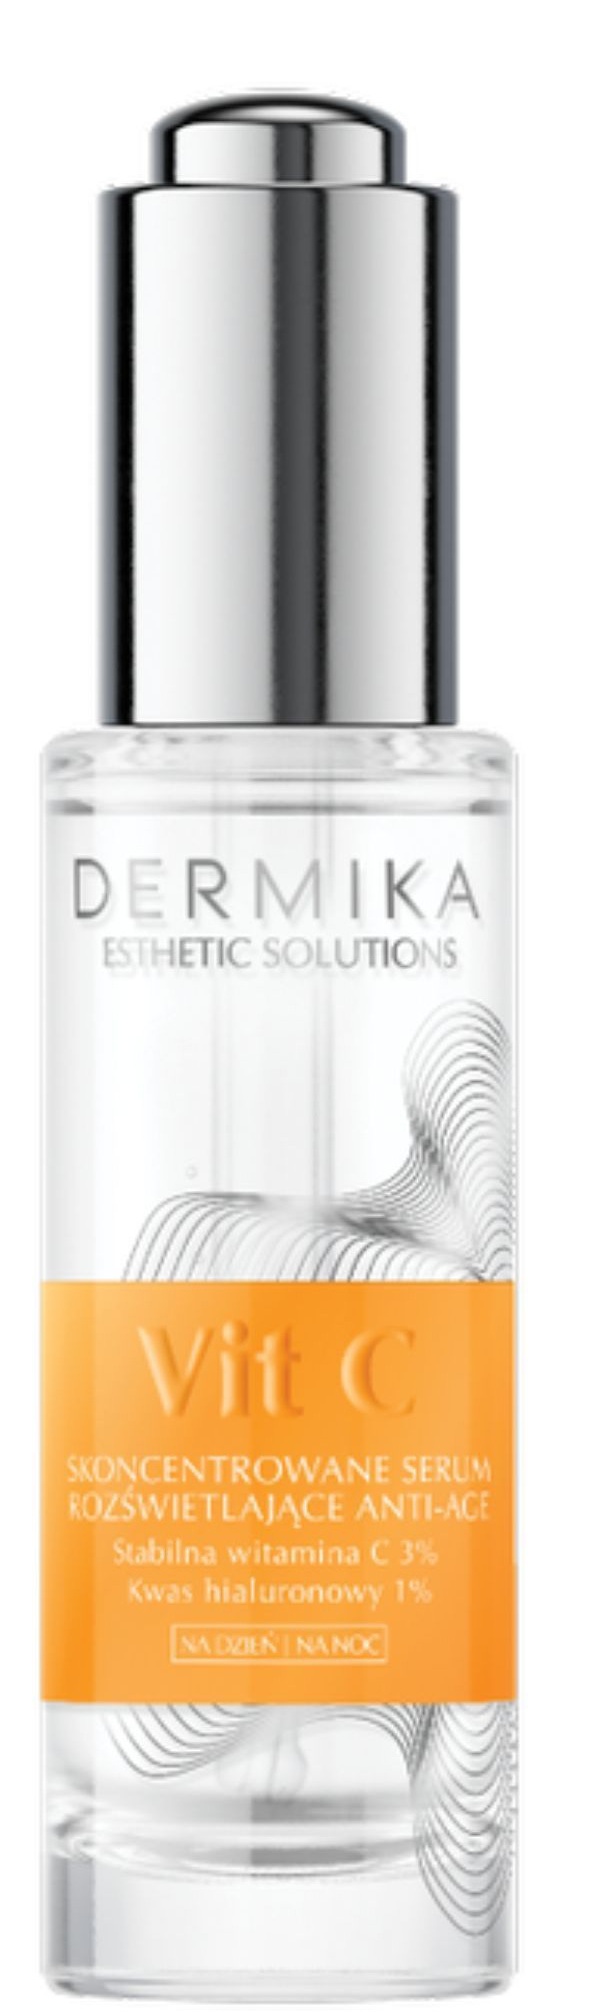 Dermika Esthetic Solutions Vit C Concentrated Anti-Age Illuminating Serum